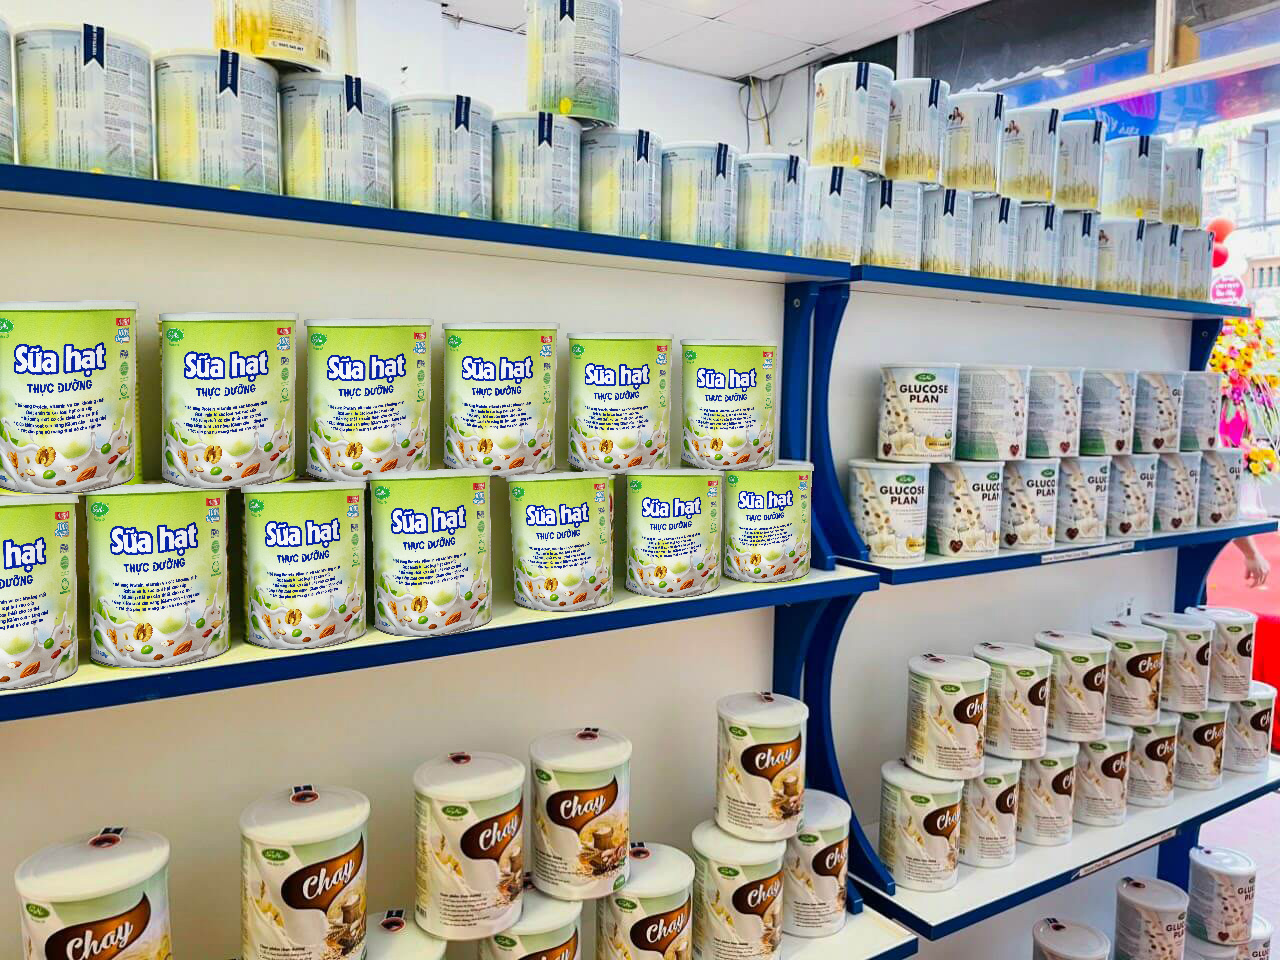 Mua sản phẩm thực phẩm Sữa hạt thực dưỡng Soyna 800g giá tốt nhất ở đâu